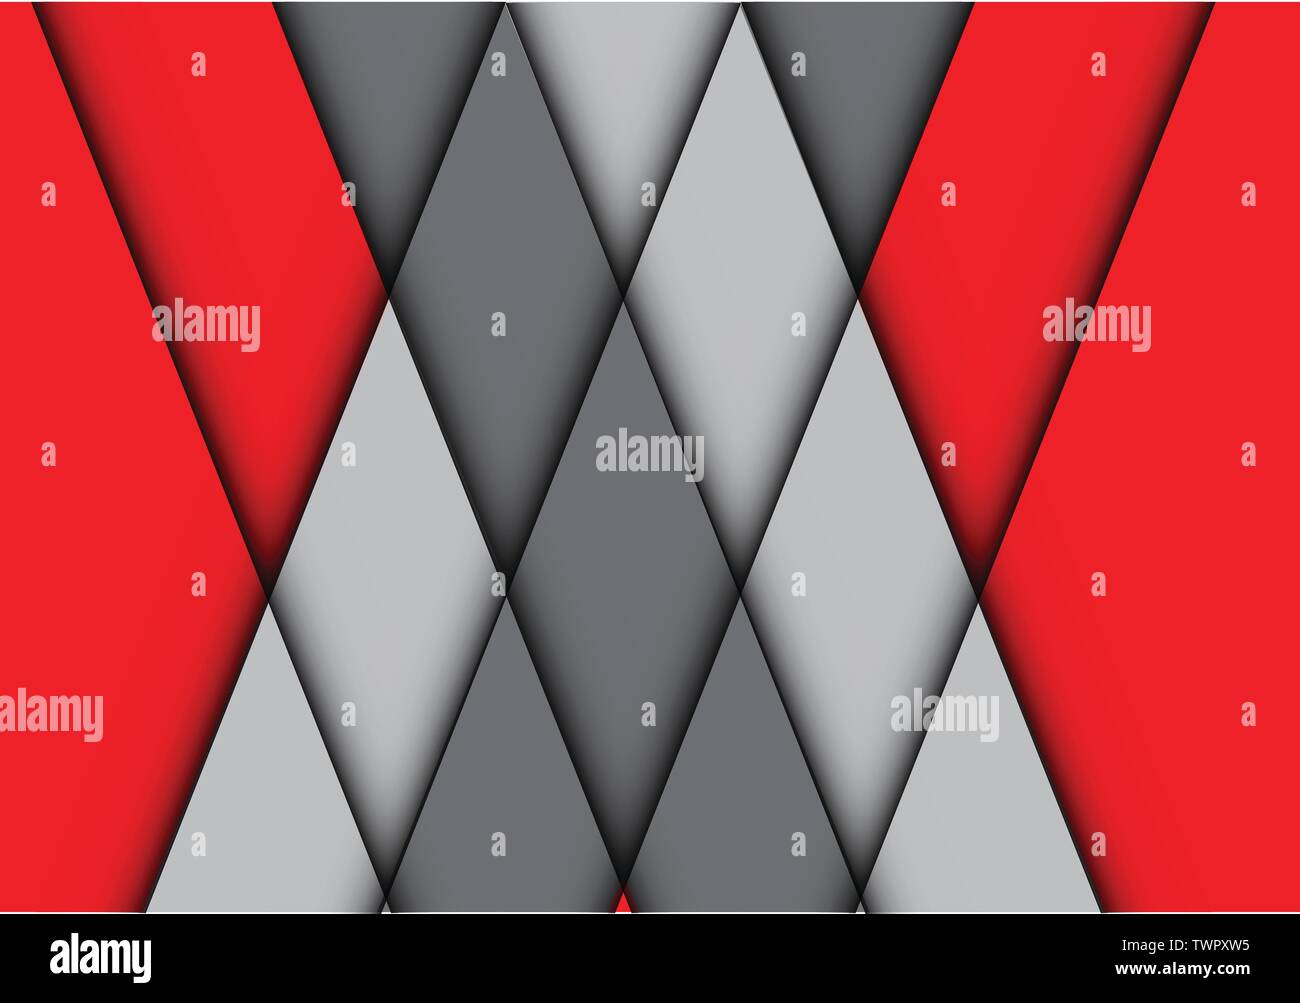 Résumé rouge croix gris en forme de diamant se chevauchent fond moderne design illustration vectorielle. Illustration de Vecteur